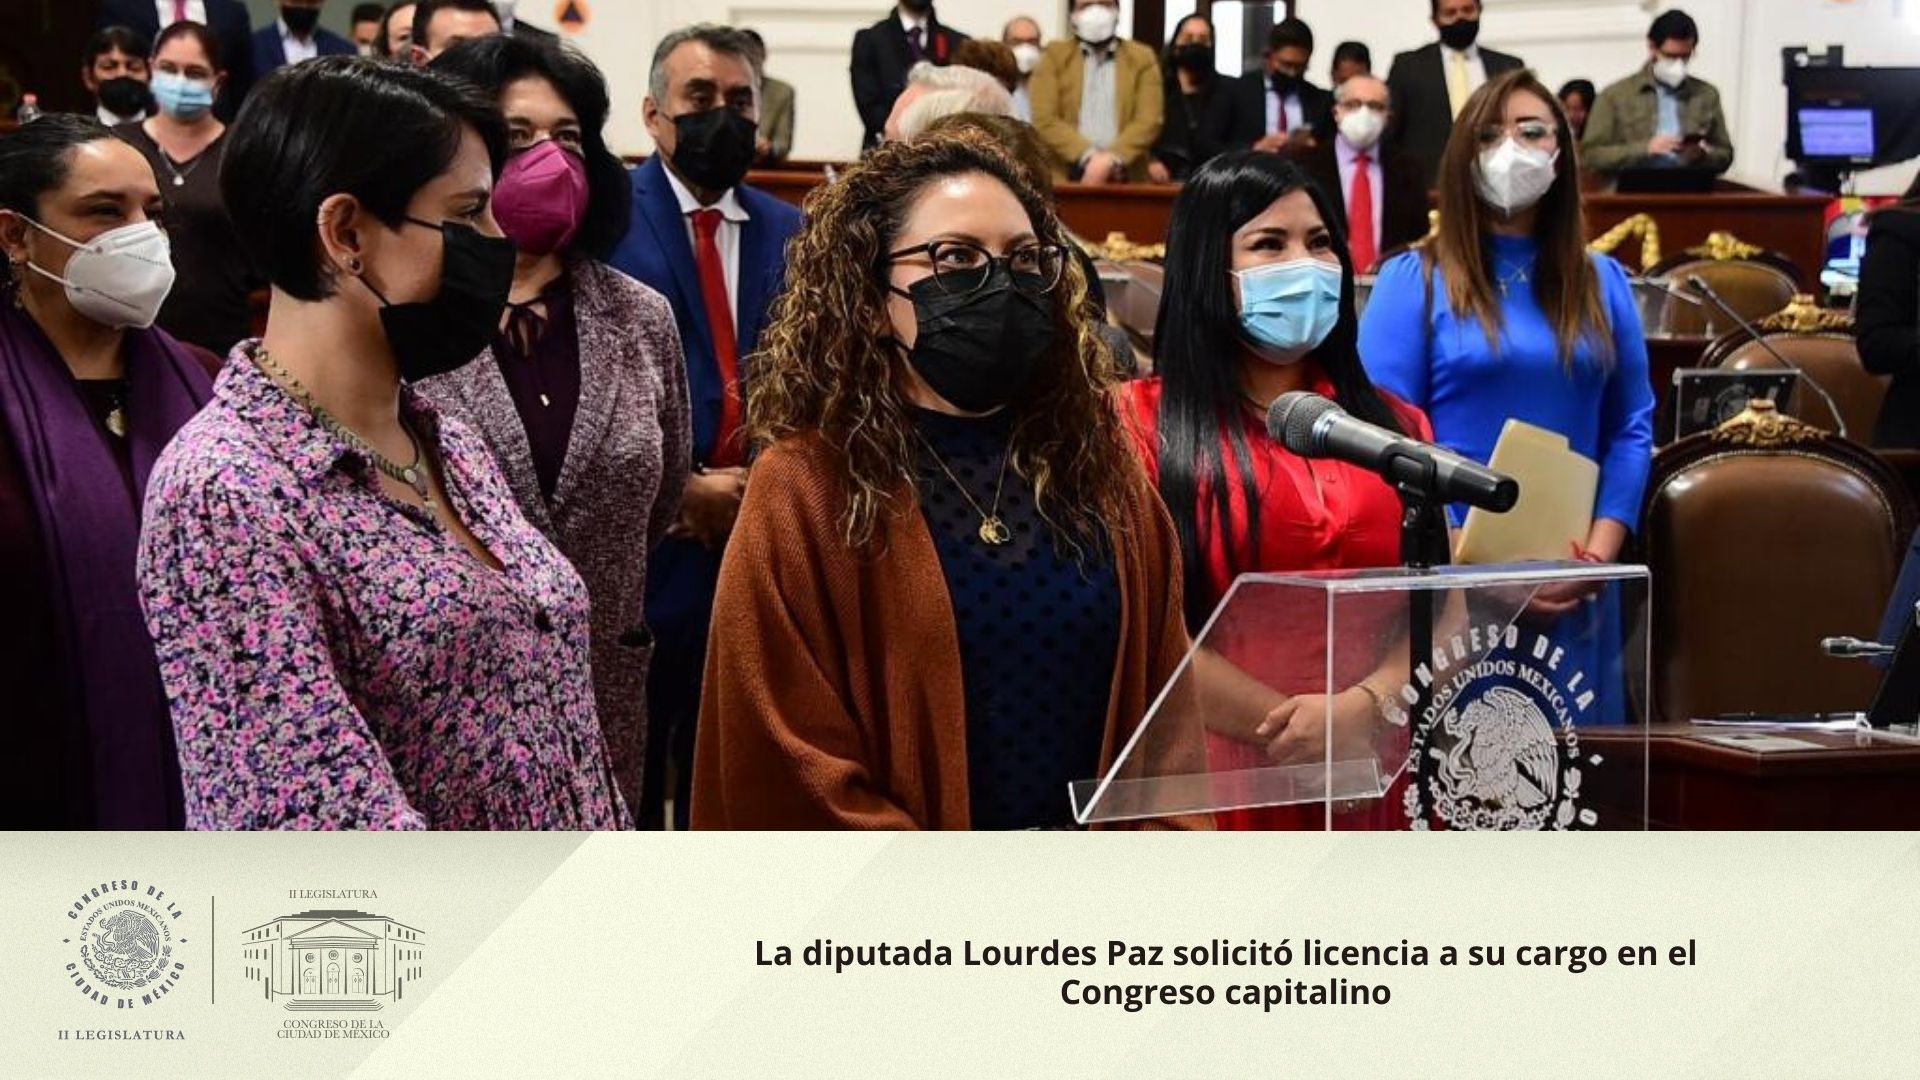 La diputada Lourdes Paz solicitó licencia a su cargo en el Congreso capitalino  